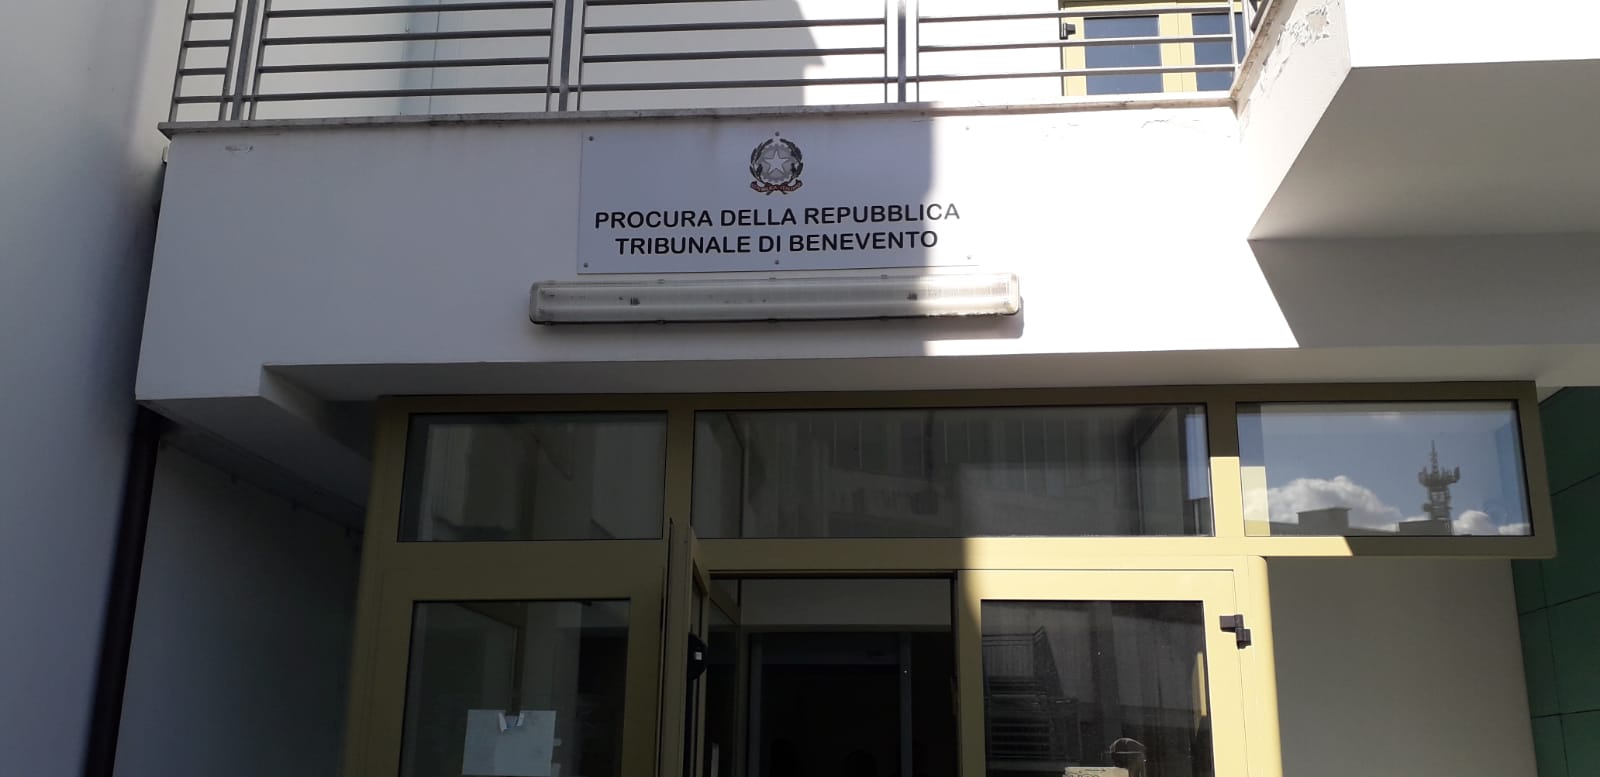 Benevento| “Truffa del bancomat” colpisce cittadino beneventano: fermati sette uomini